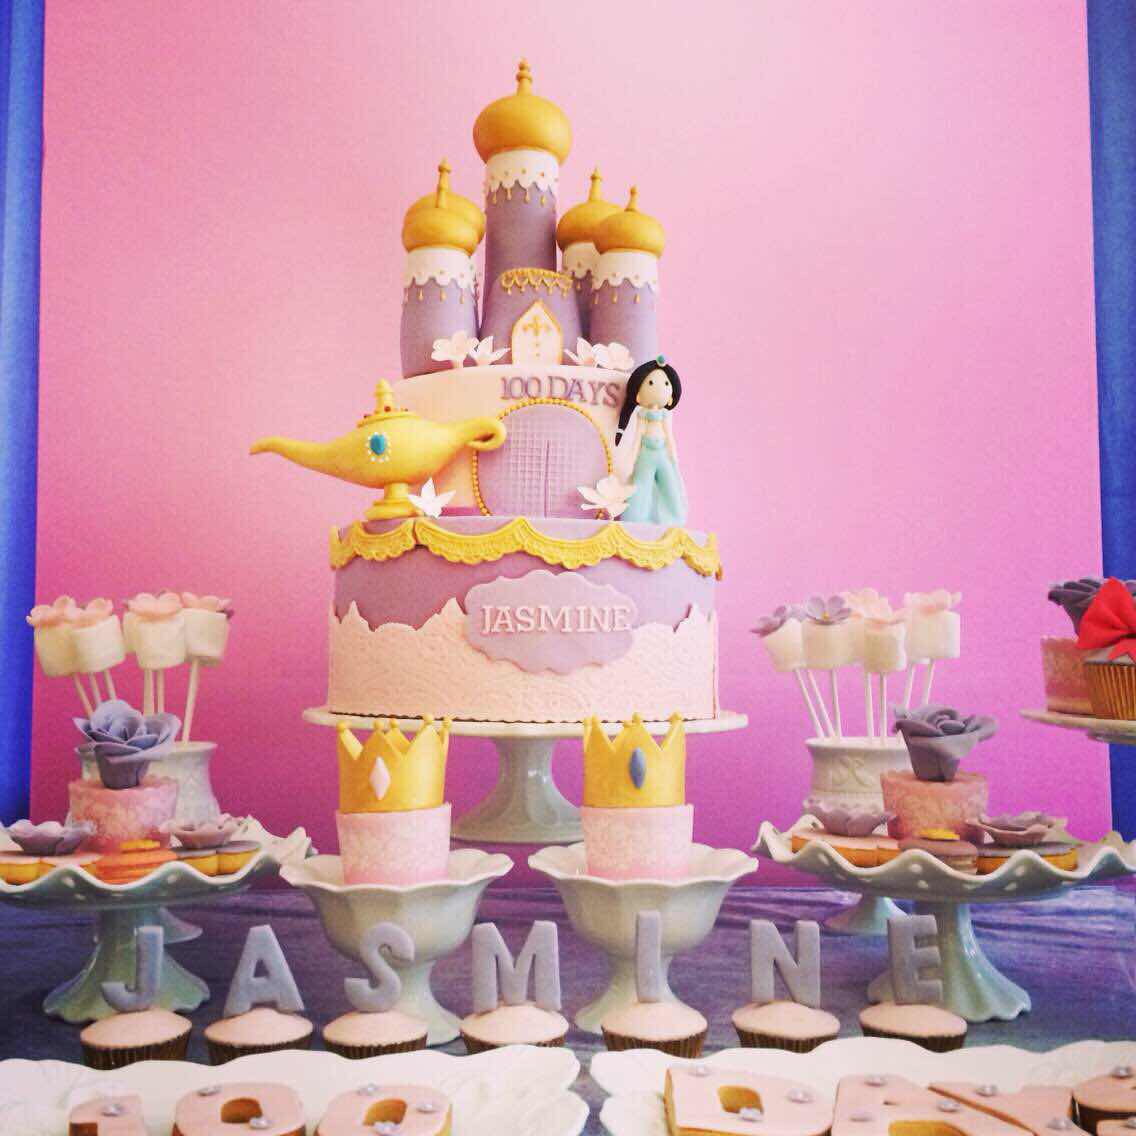 Jasmine princess cake茉莉公主蛋糕